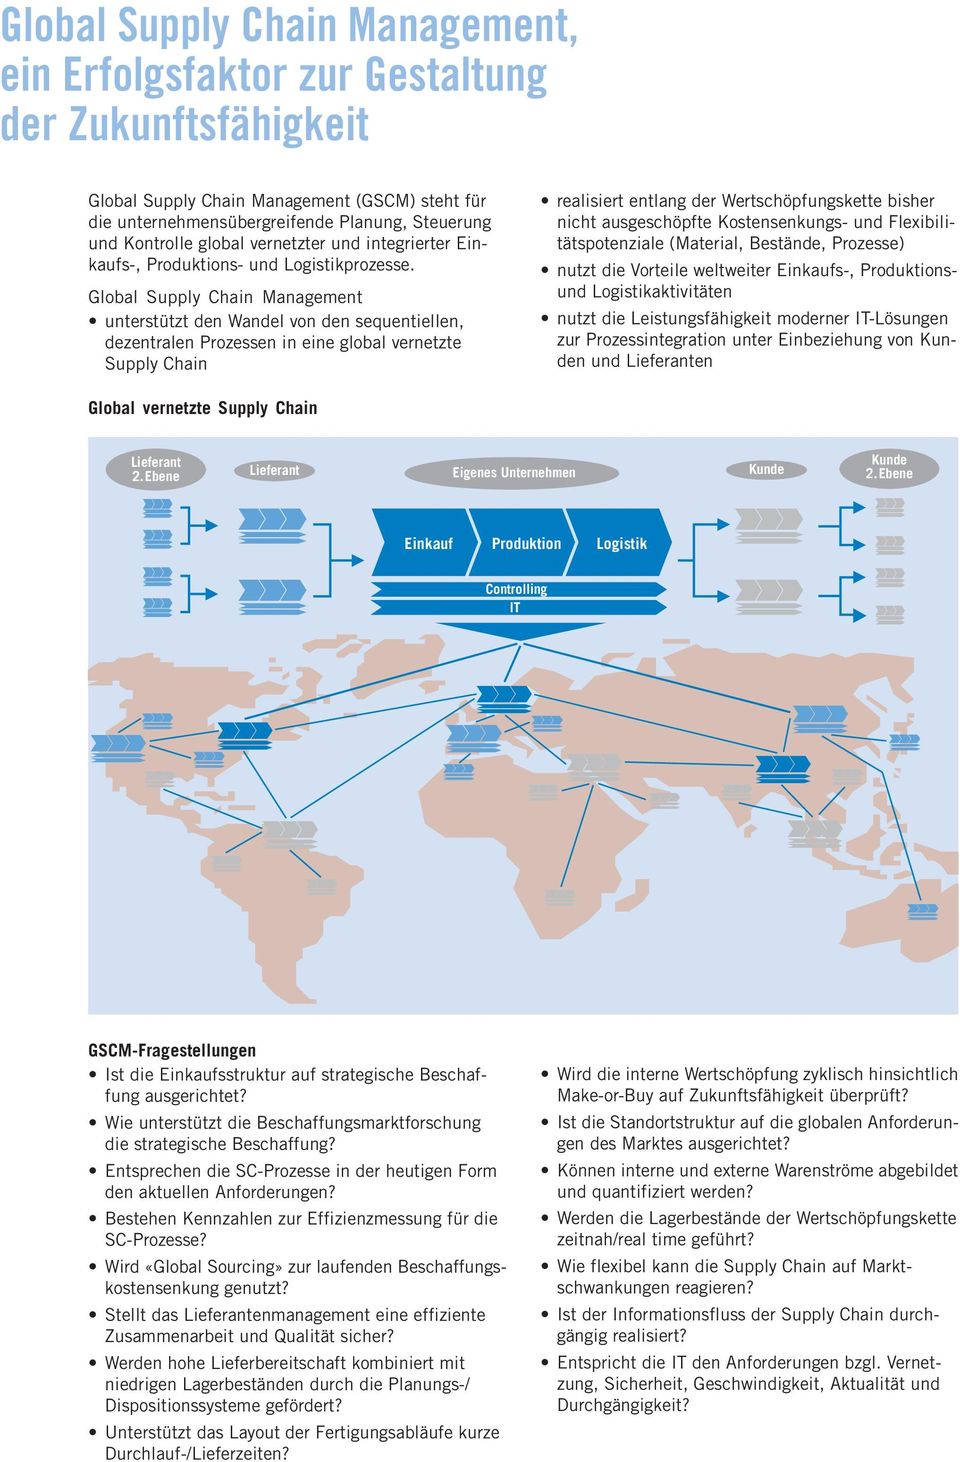 Global Supply Chain Management unterstützt den Wandel von den sequentiellen, dezentralen Prozessen in eine global vernetzte Supply Chain realisiert entlang der Wertschöpfungskette bisher nicht